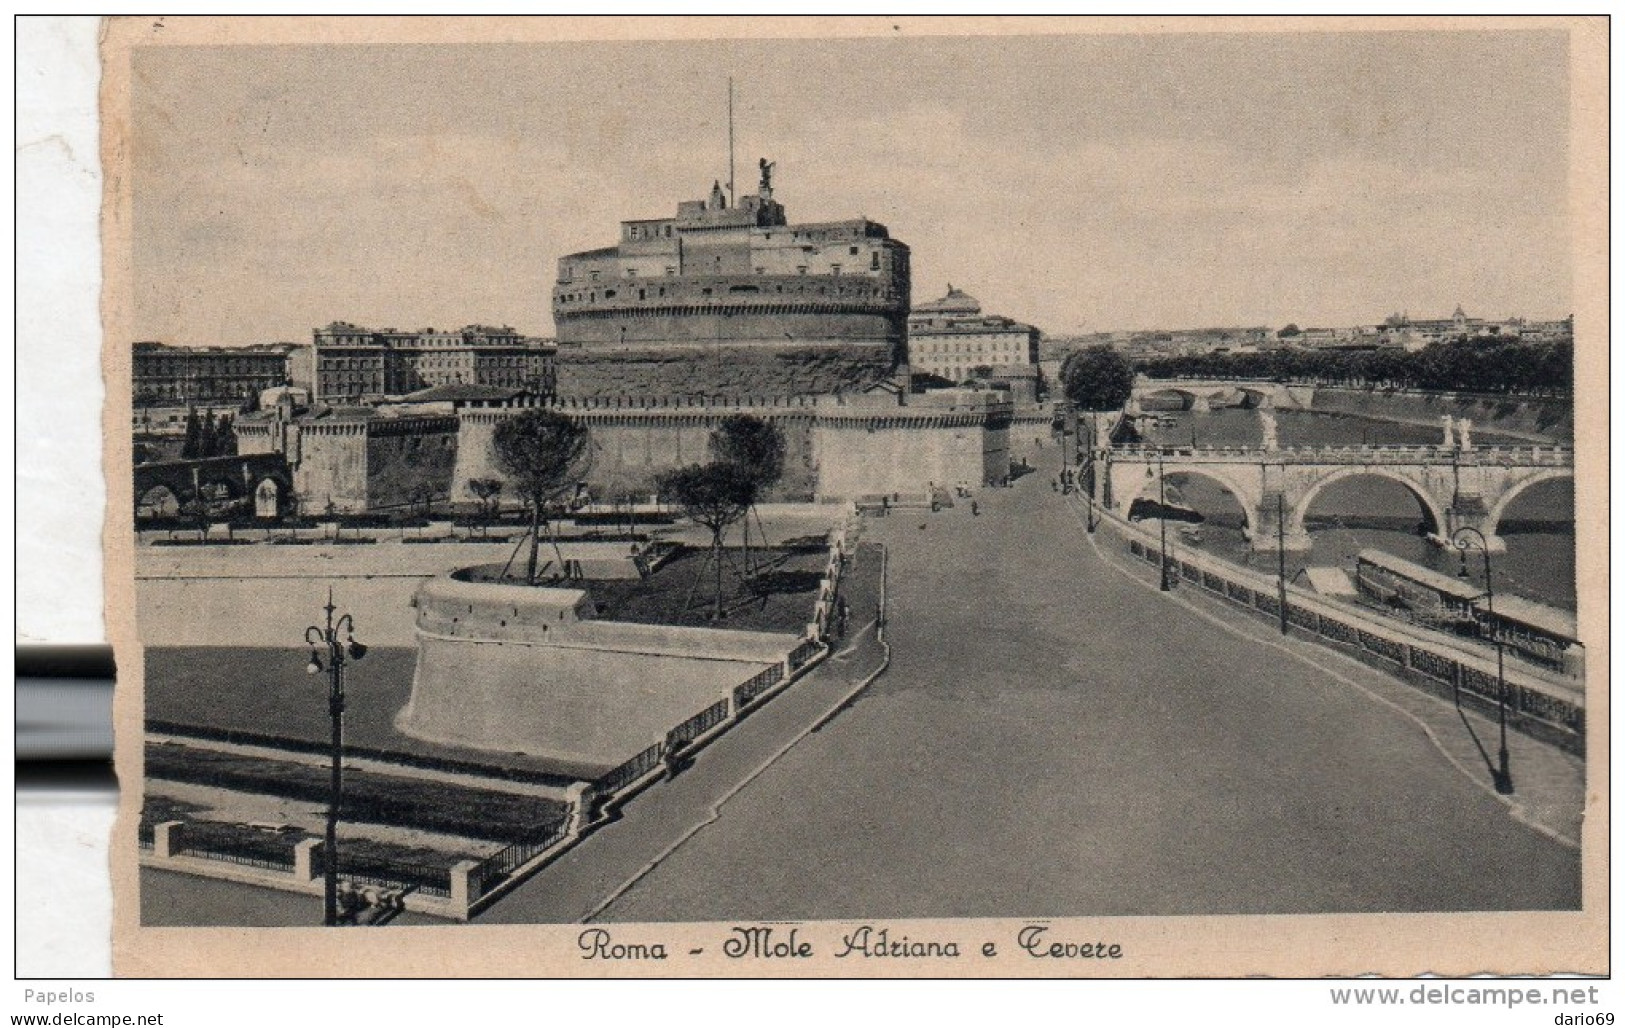 1935  CARTOLINA  CON ANNULLO ROMA - Andere Monumente & Gebäude